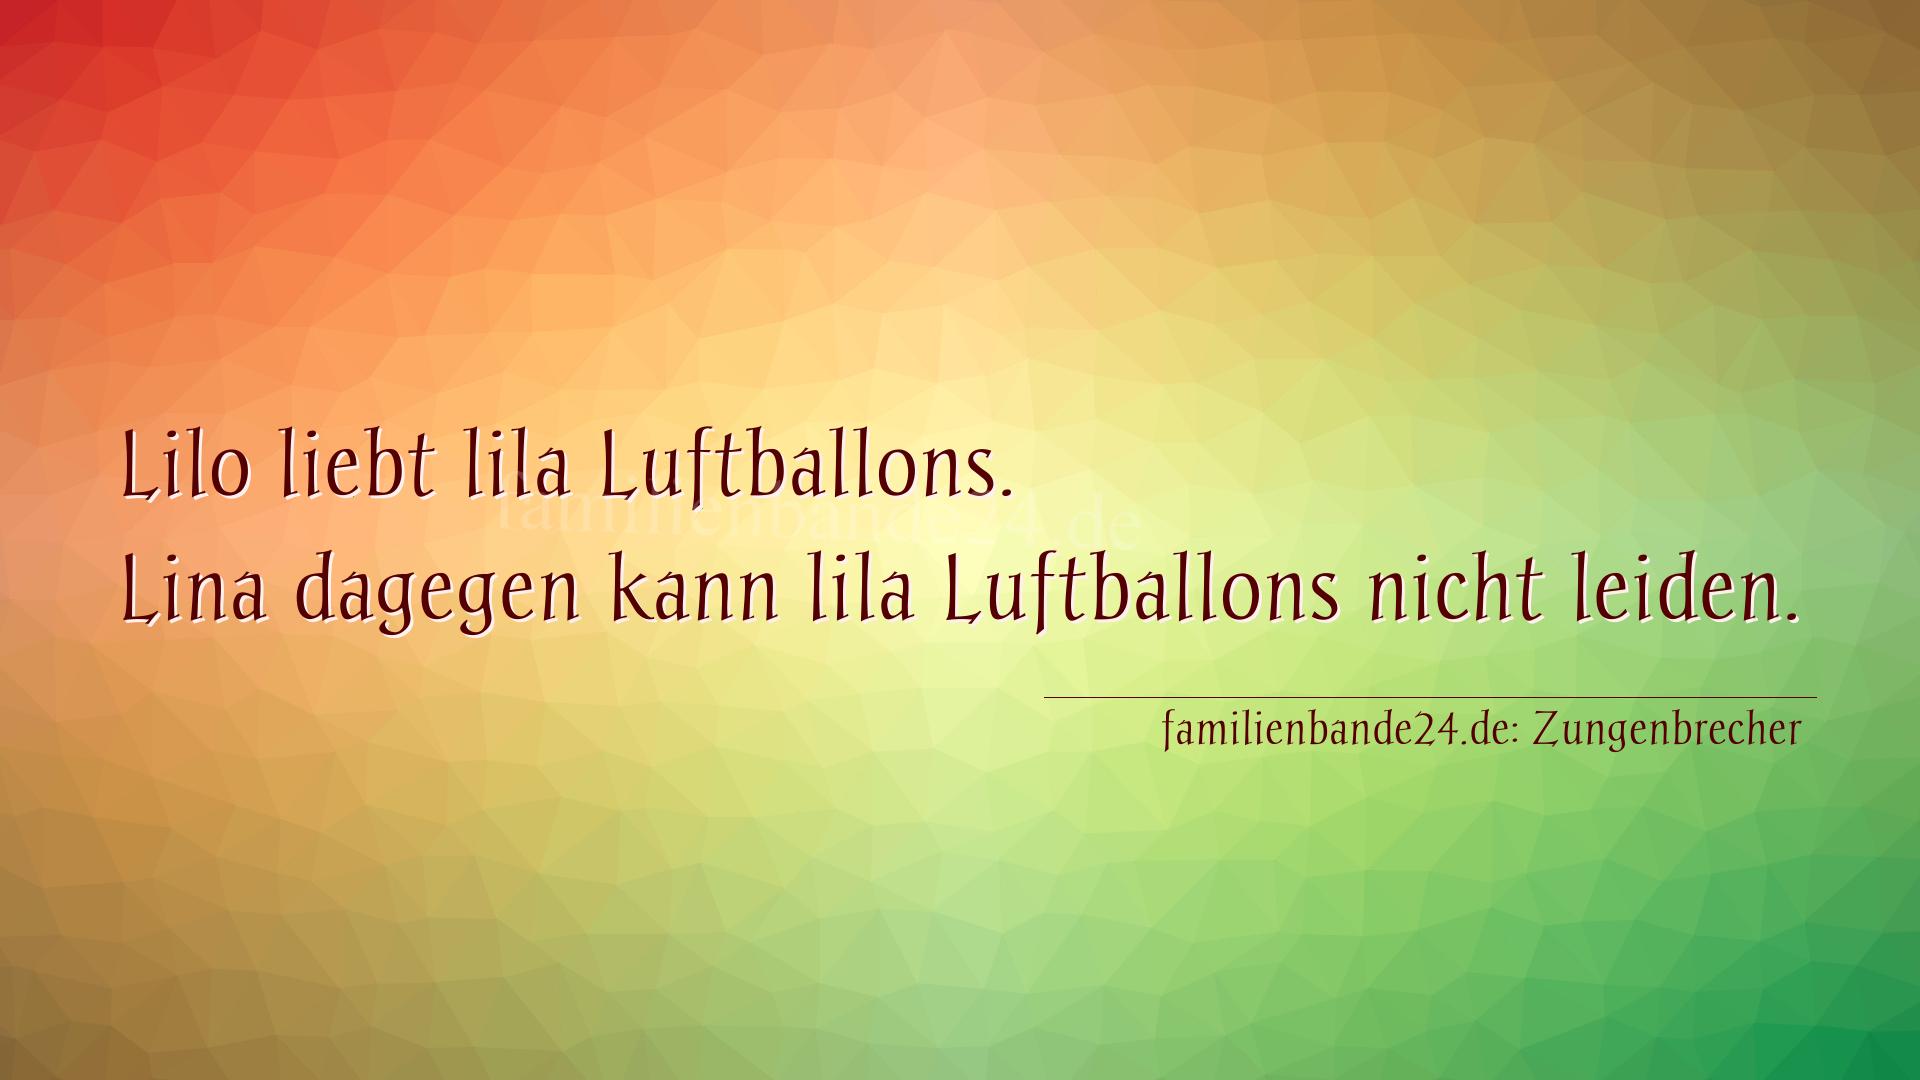 Zungenbrecher Nr. 778: Lilo liebt lila Luftballons. Lina dagegen kann lila Luftba [...]